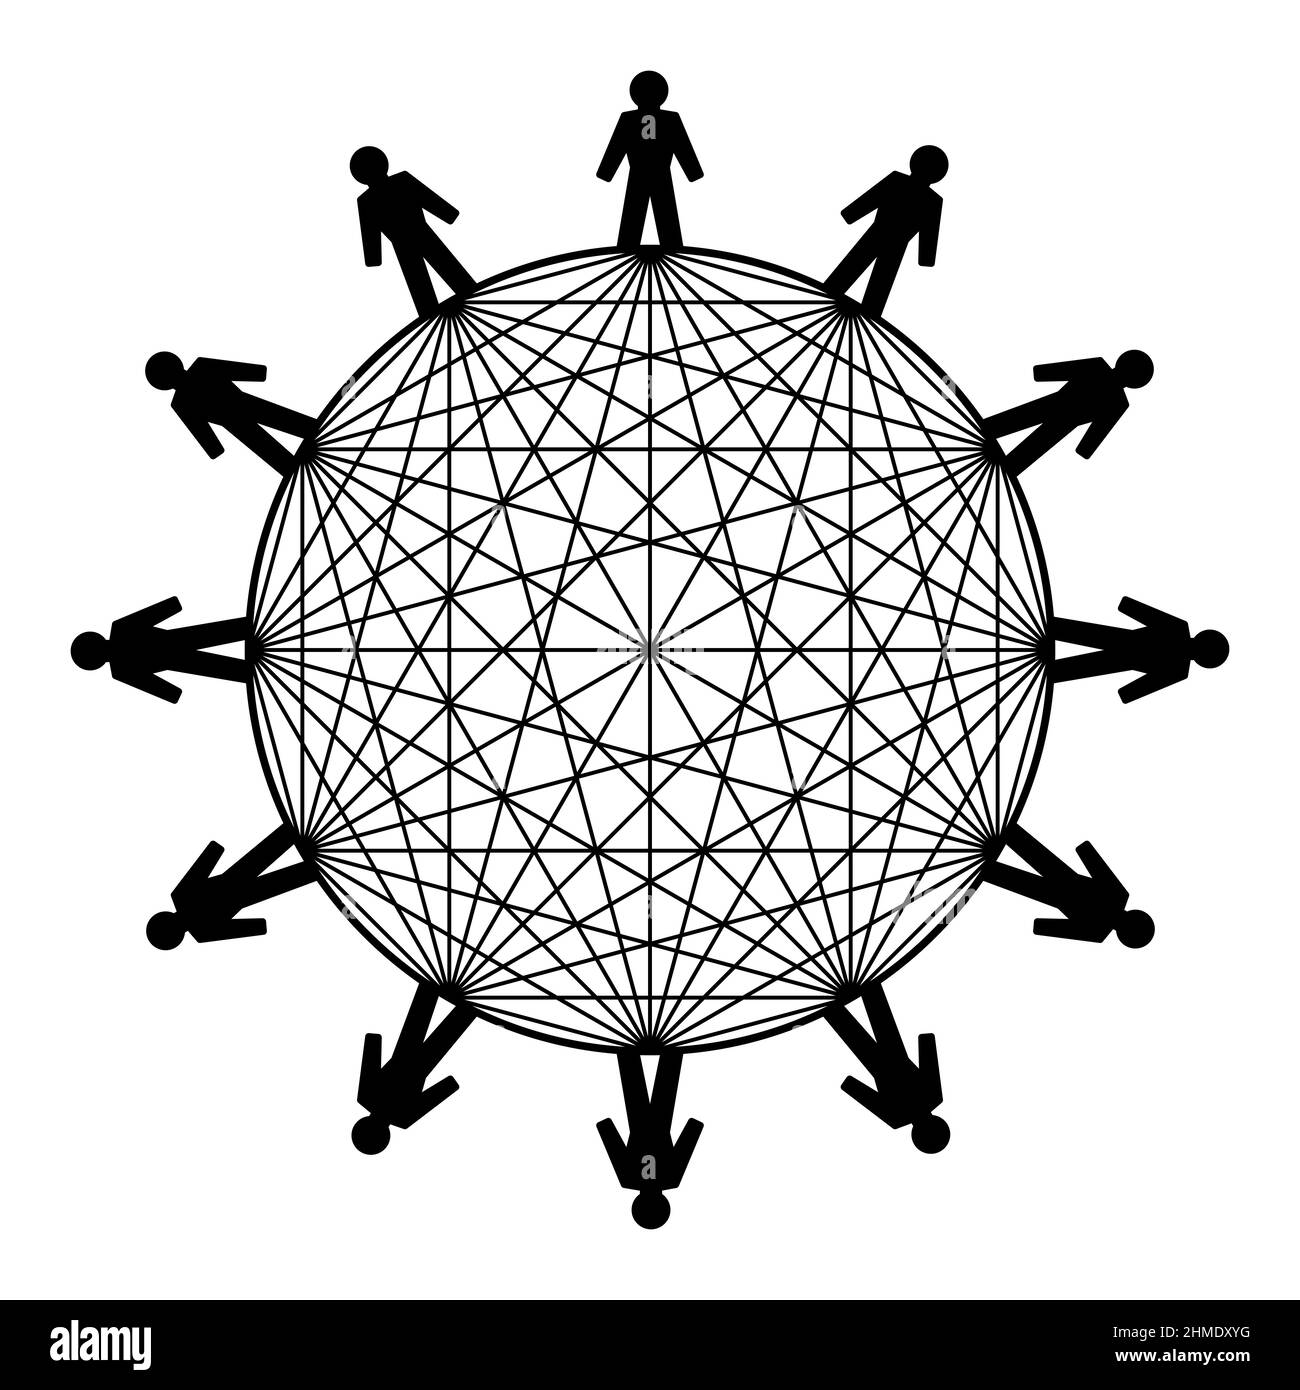 Symbole de la puissance de la mise en réseau. Douze personnes se tenant dans un cercle, reliées par des lignes. Le nombre de connexions possibles est de 66. Banque D'Images